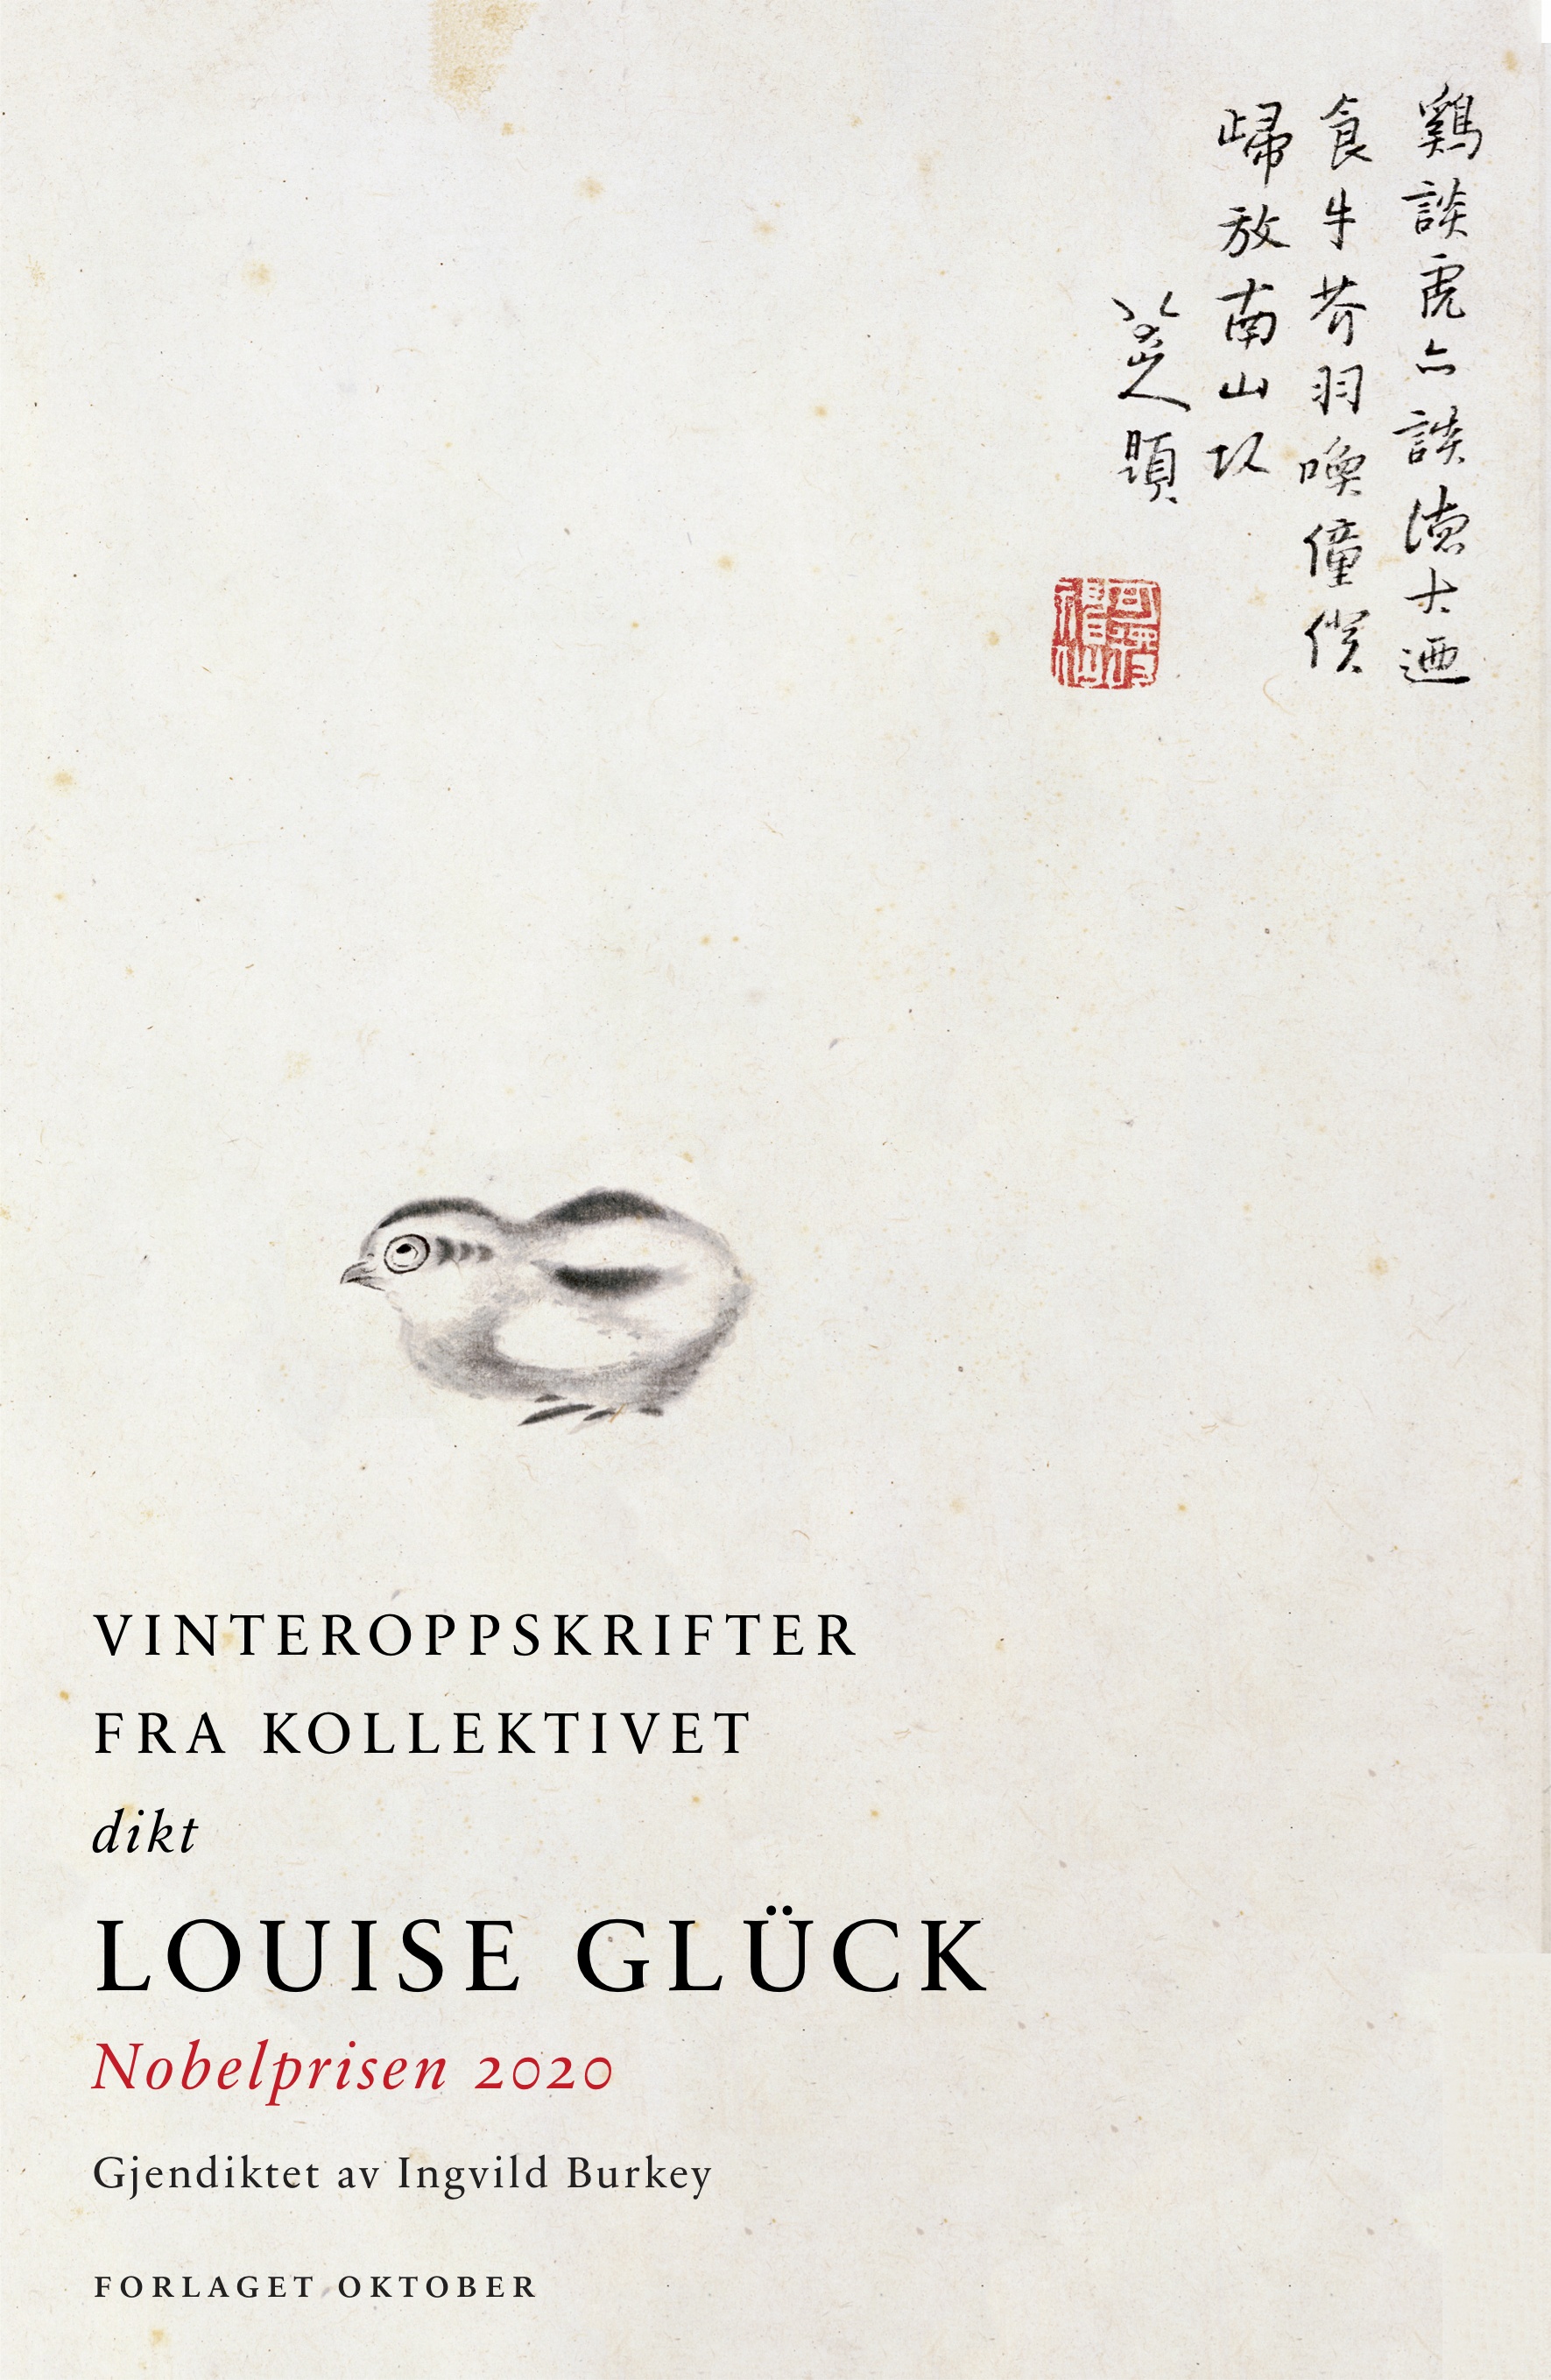 Vinteroppskrifter fra kollektivet Louise Glück